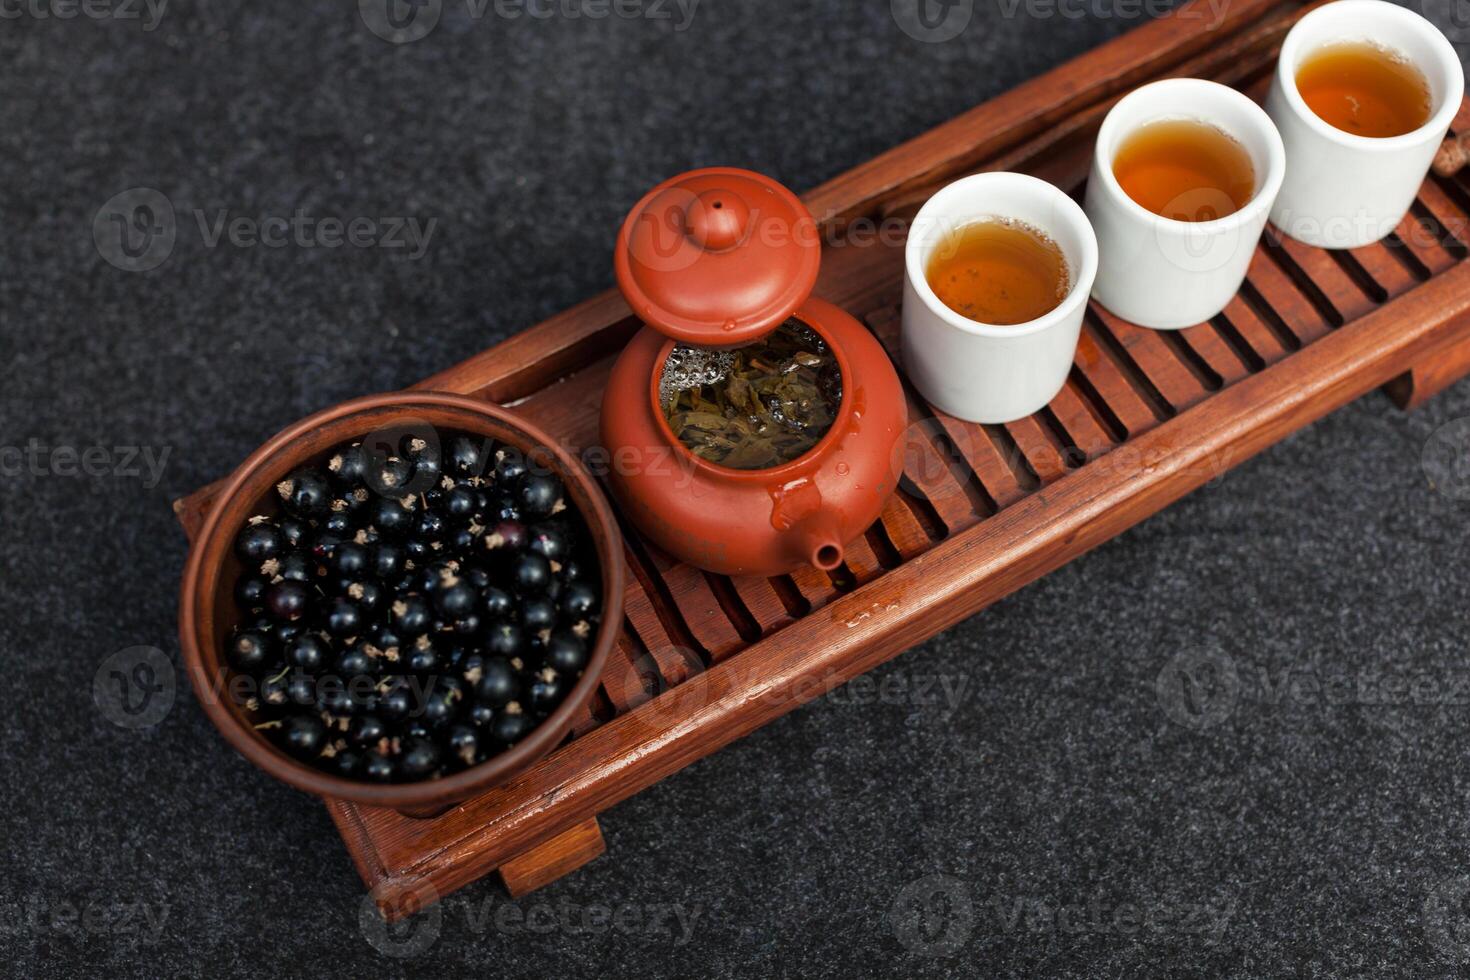 traditioneel Chinese thee ceremonie met zwart bes, fruit thee en gezond voedsel. foto zonder mensen. zomer natuurlijk vitamines en bessen